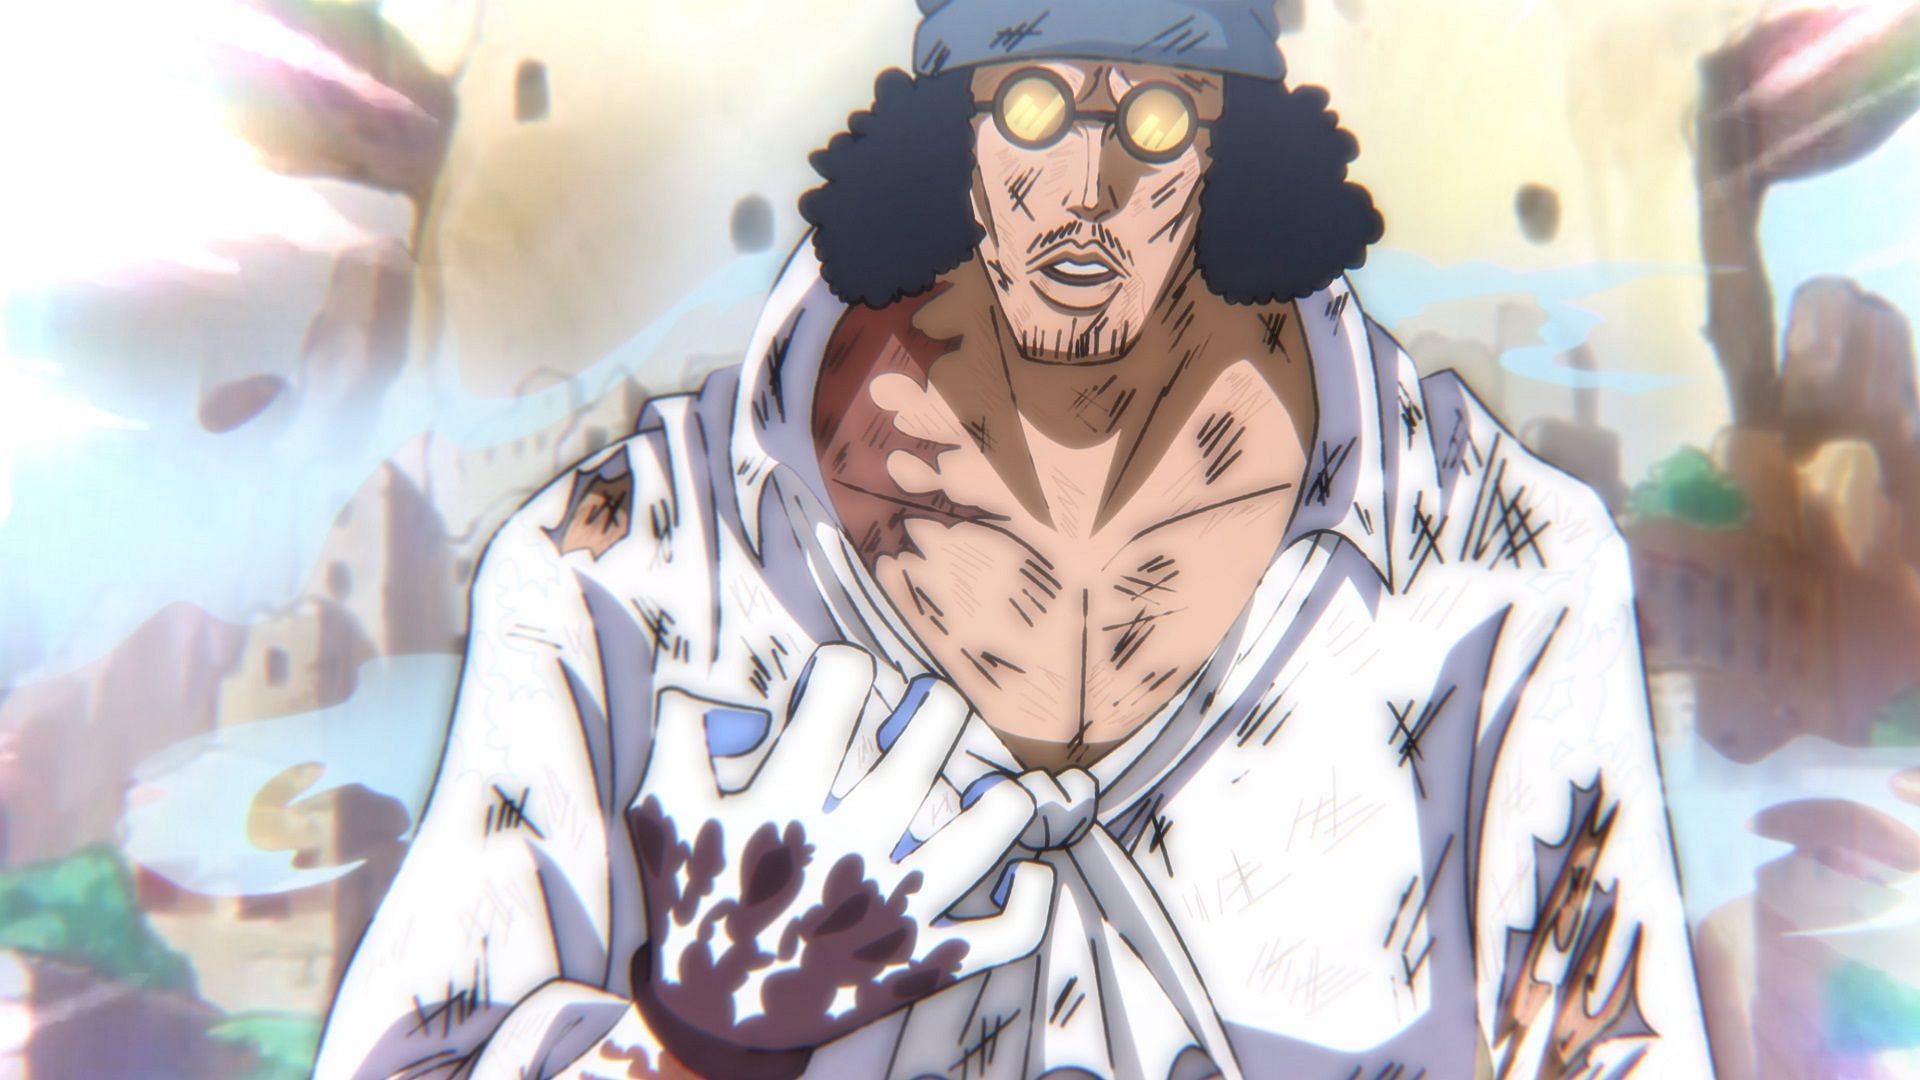 Aokiji as seen in chapter 1087 of One Piece (Image via Eiichiro Oda/Shueisha, One Piece)